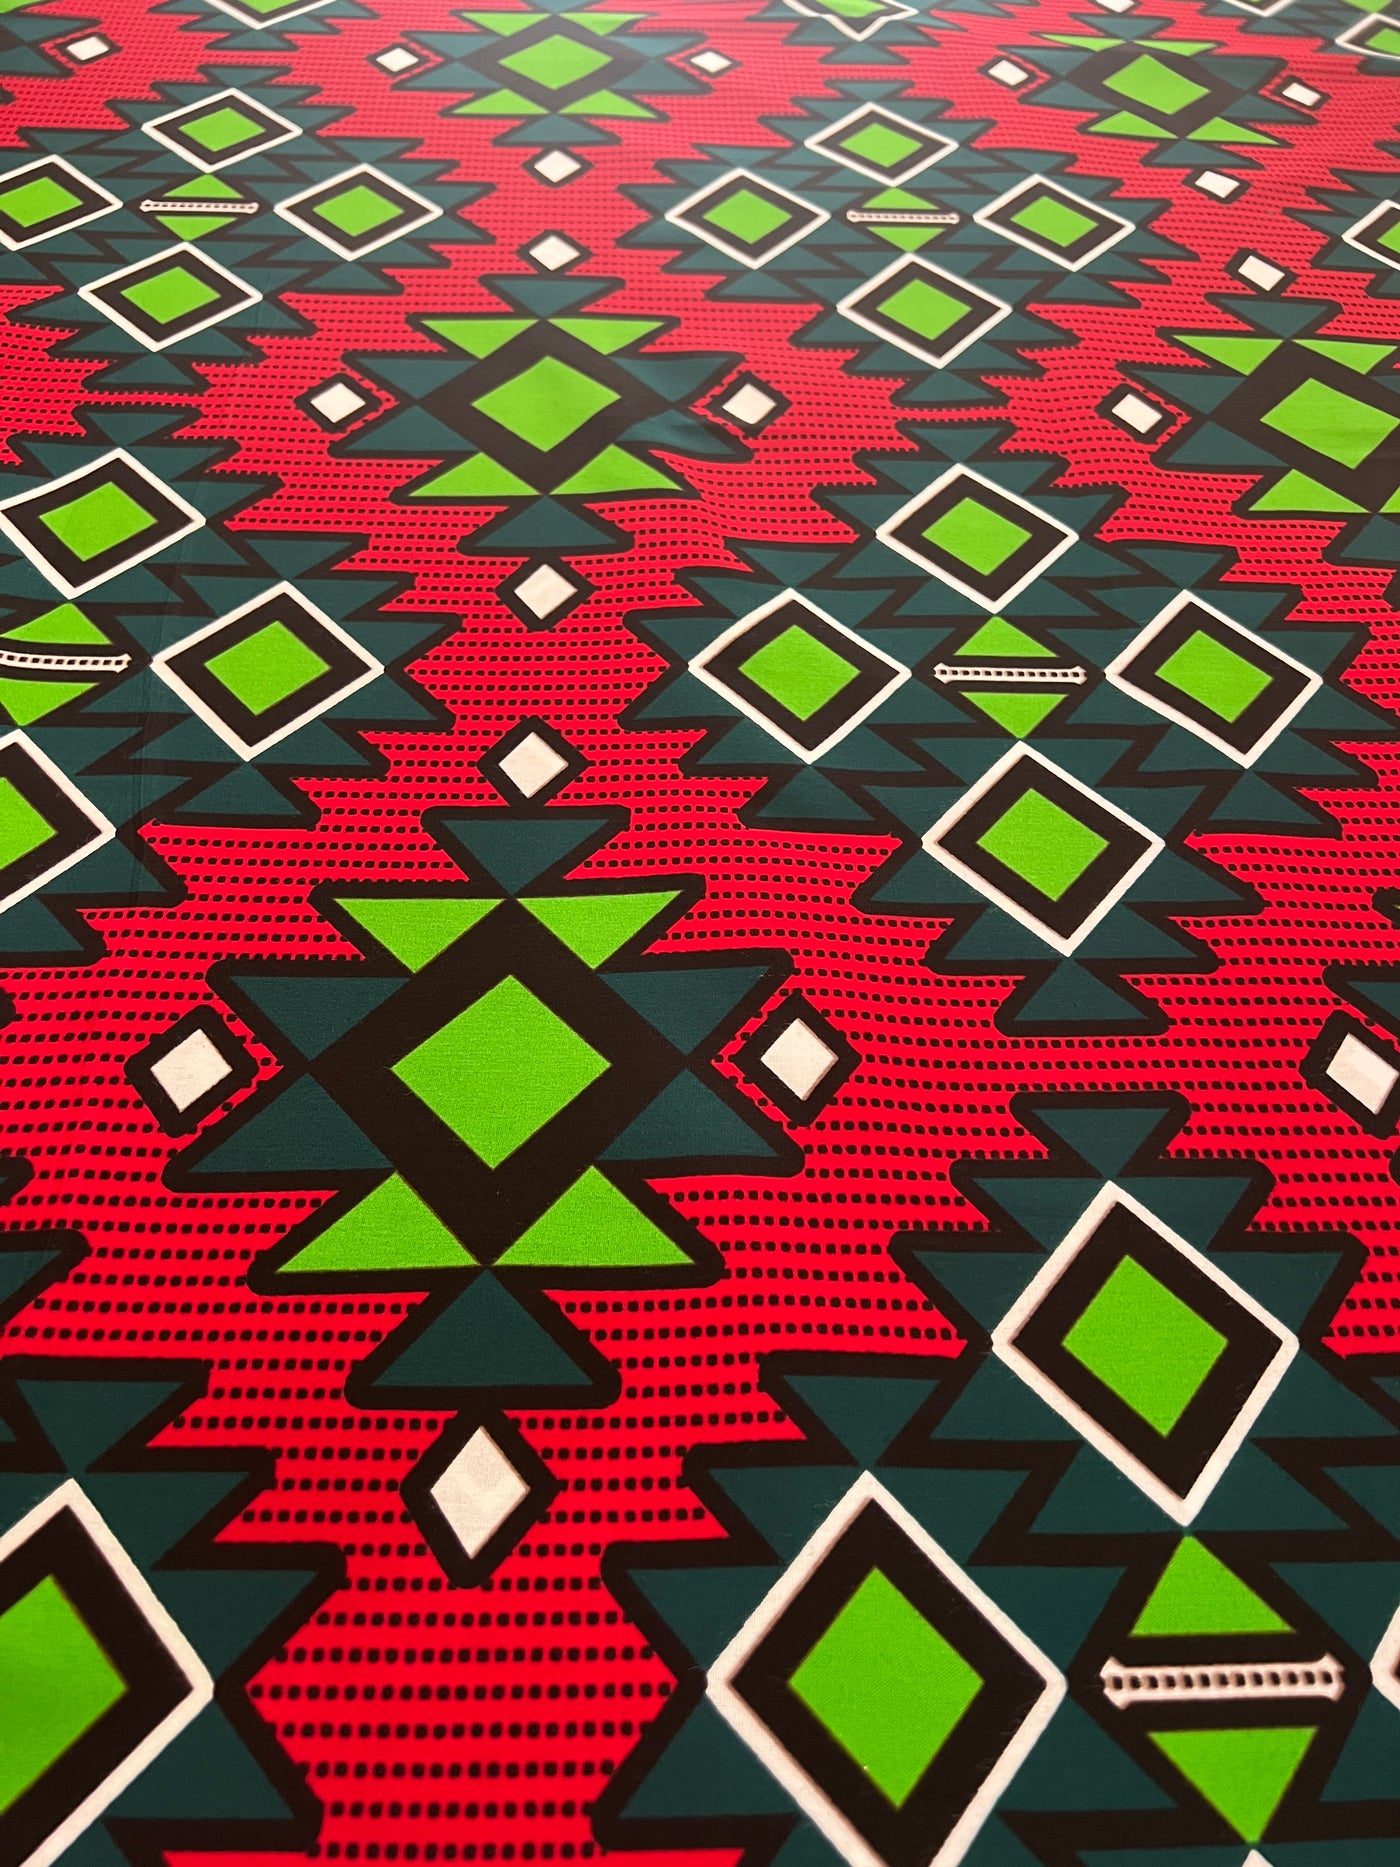 Ankara Fabric - RI02508